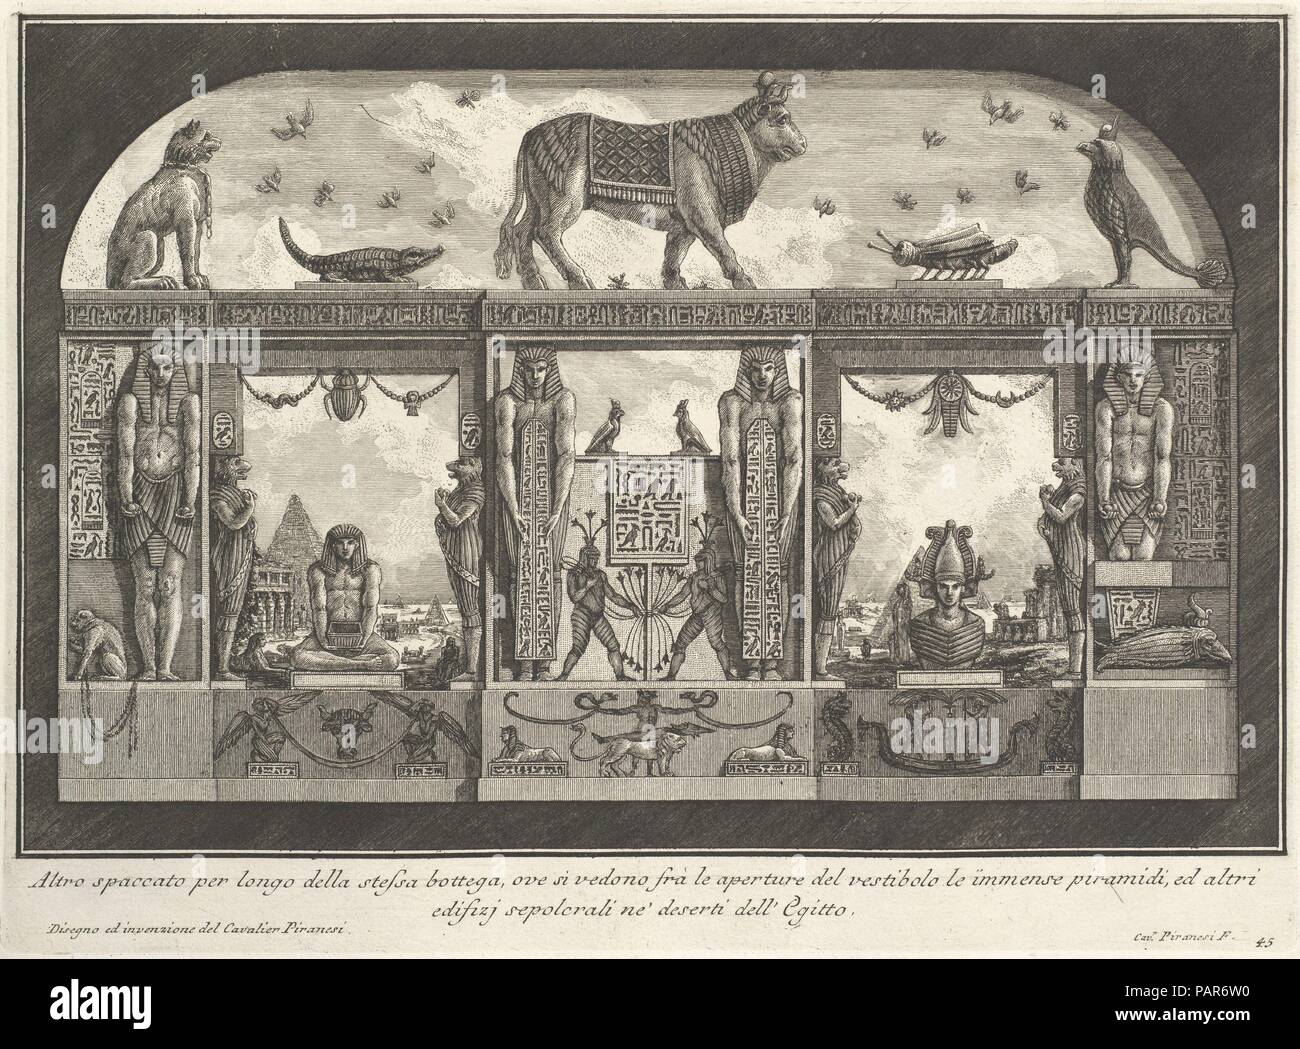 Egyptian decoration of the Caffè degli Inglesi: Animals on the cornice, including a bull at the center, from Diverse Maniere d'adornare i cammini... (Diverse Ways of ornamenting chimneypieces...). Artist: Giovanni Battista Piranesi (Italian, Mogliano Veneto 1720-1778 Rome). Dimensions: Sheet: 21 7/16 x 15 3/16 in. (54.5 x 38.5 cm)  Plate: 9 5/16 x 12 5/8 in. (23.7 x 32 cm) printed horizontally. Series/Portfolio: Diverse Maniere d'adornare i cammini ed ogni altra parte degli edifizi desunte dall'architettura Egizia, Etrusca, e Greca con un Ragionamento Apologetico in defesa dell'Architettura Eg Stock Photo